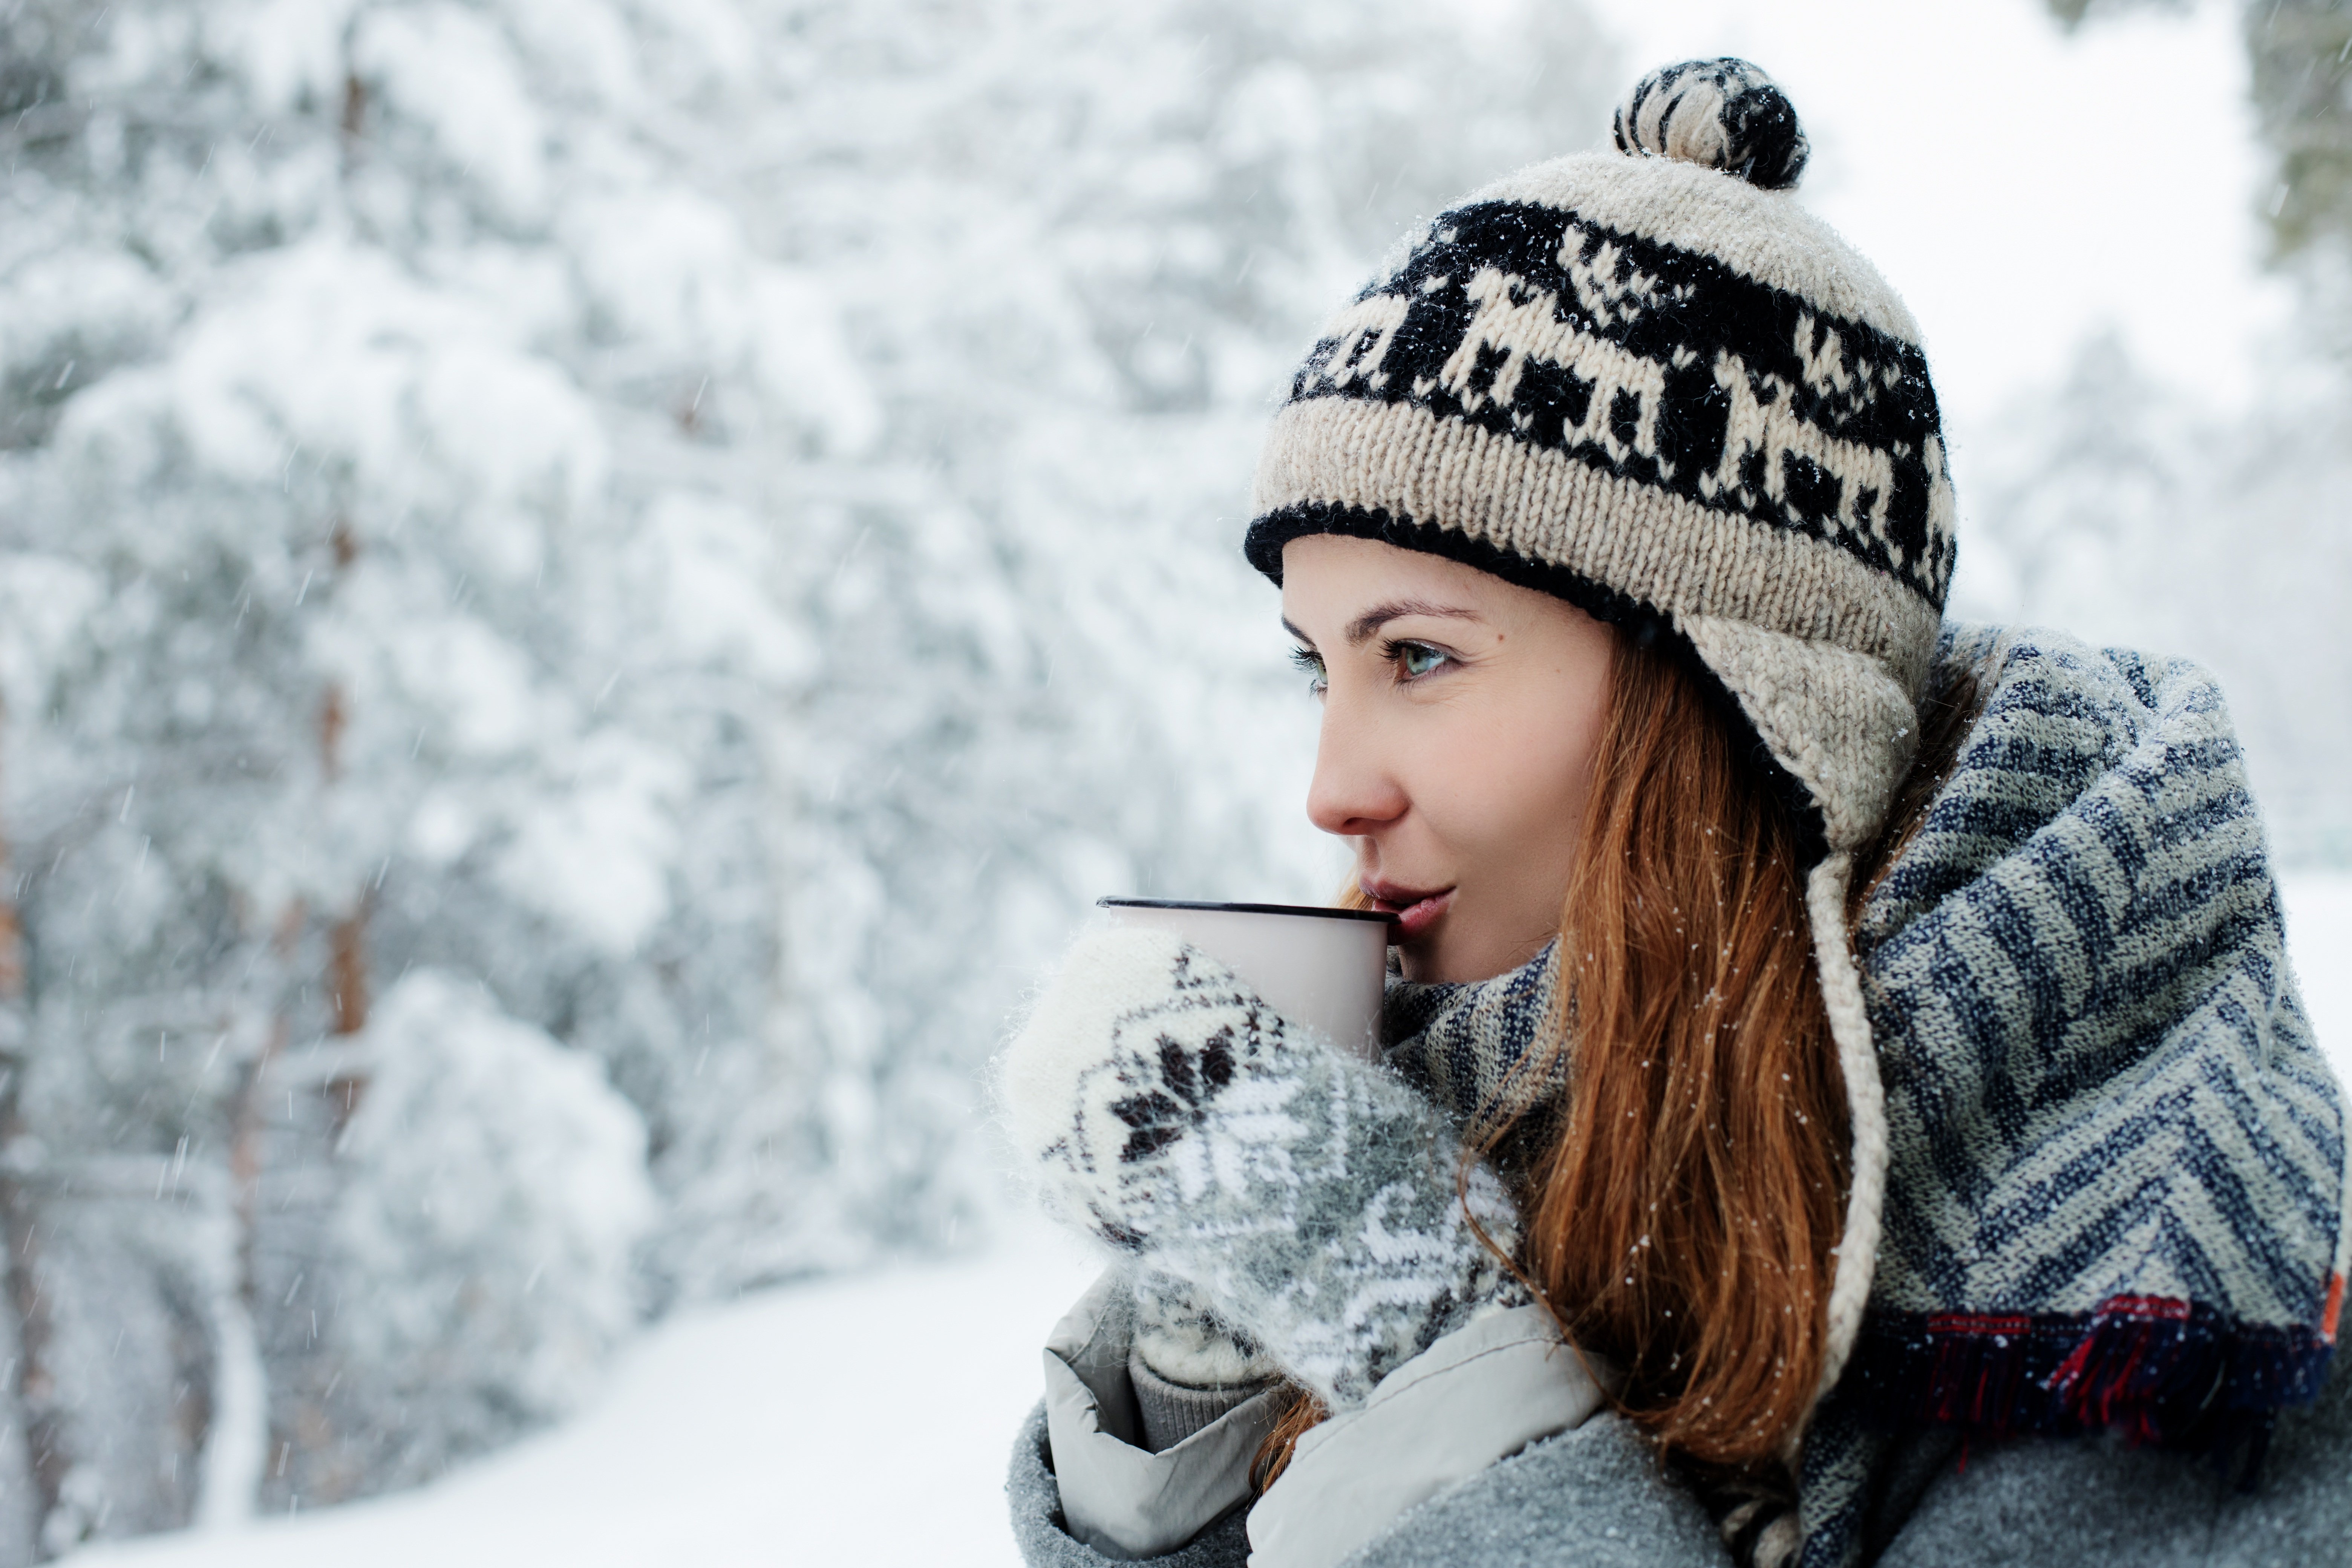 Beautiful girl in a warm hat drinks coffee in the winter on the street Desktop wallpaper 1024x1024